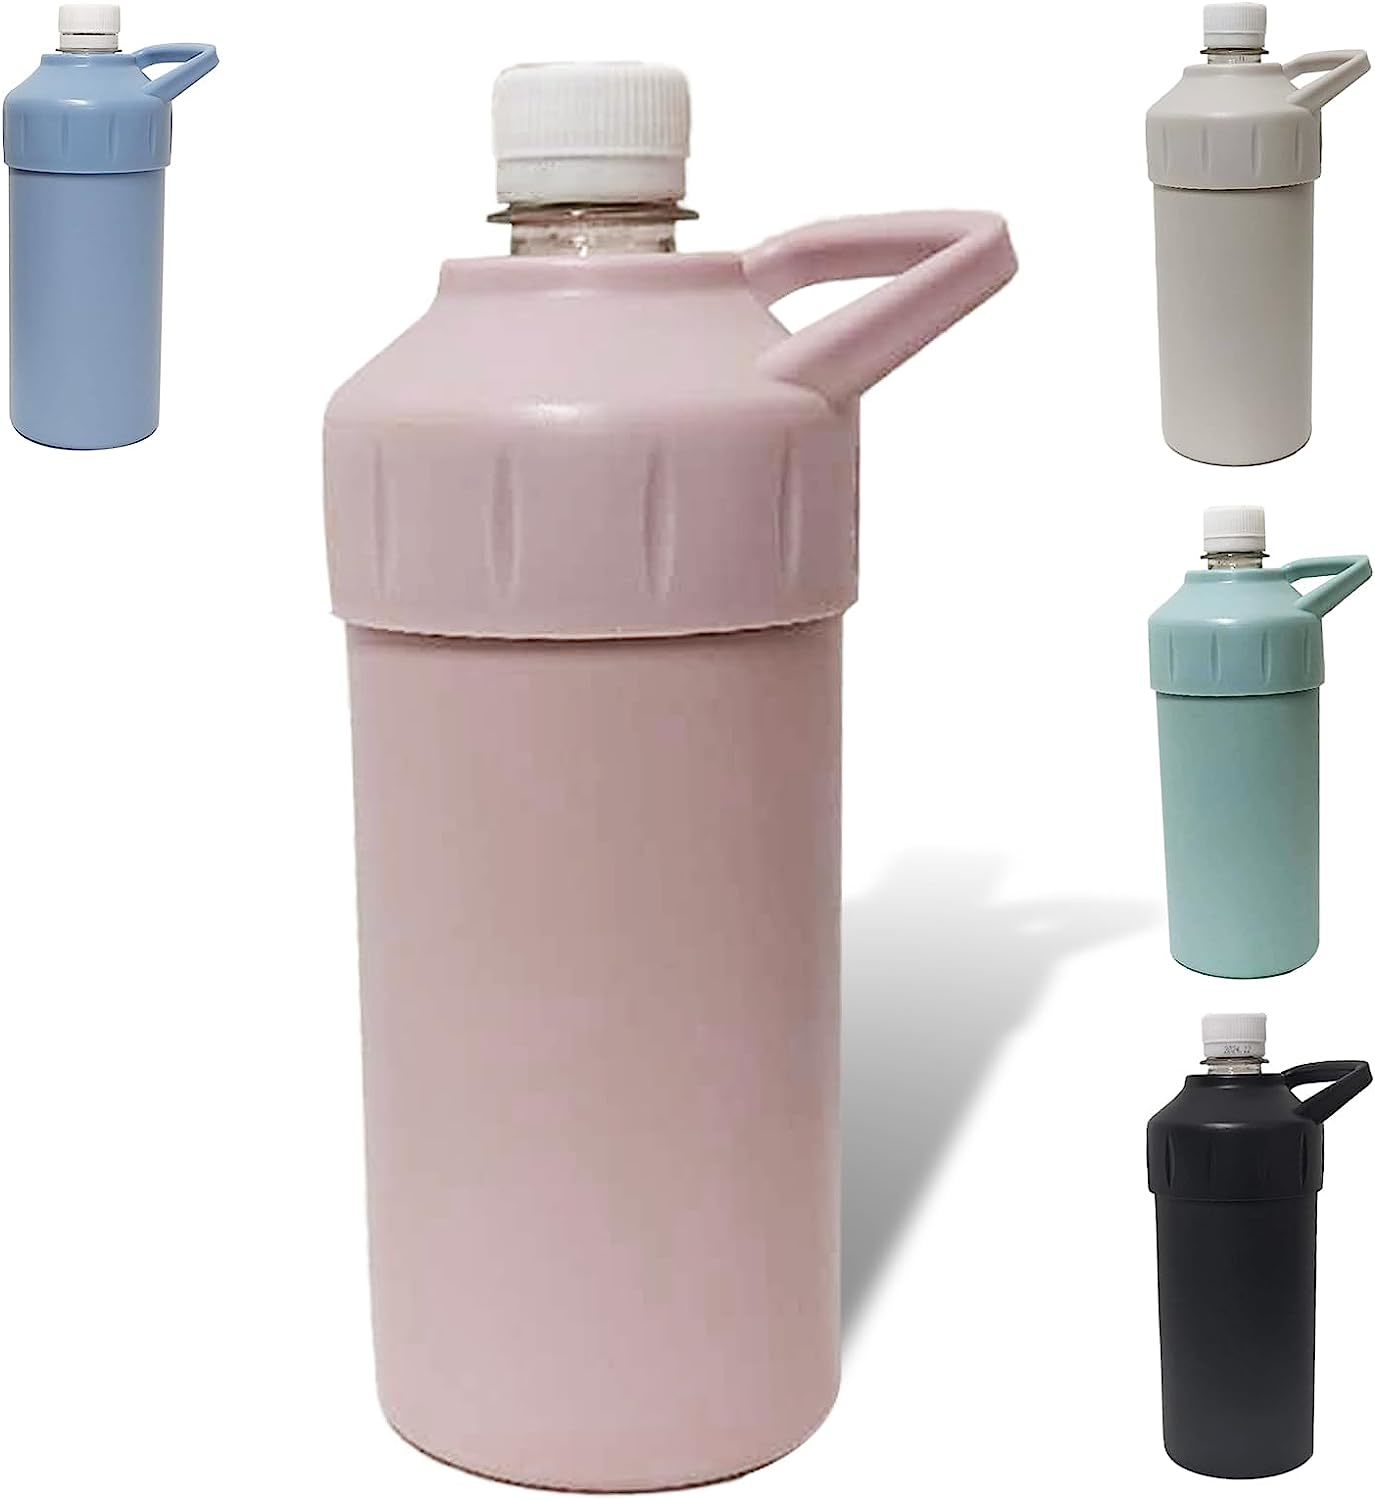 ペットボトルホルダー」売れ筋ランキング&おすすめ3選 ペットボトルを